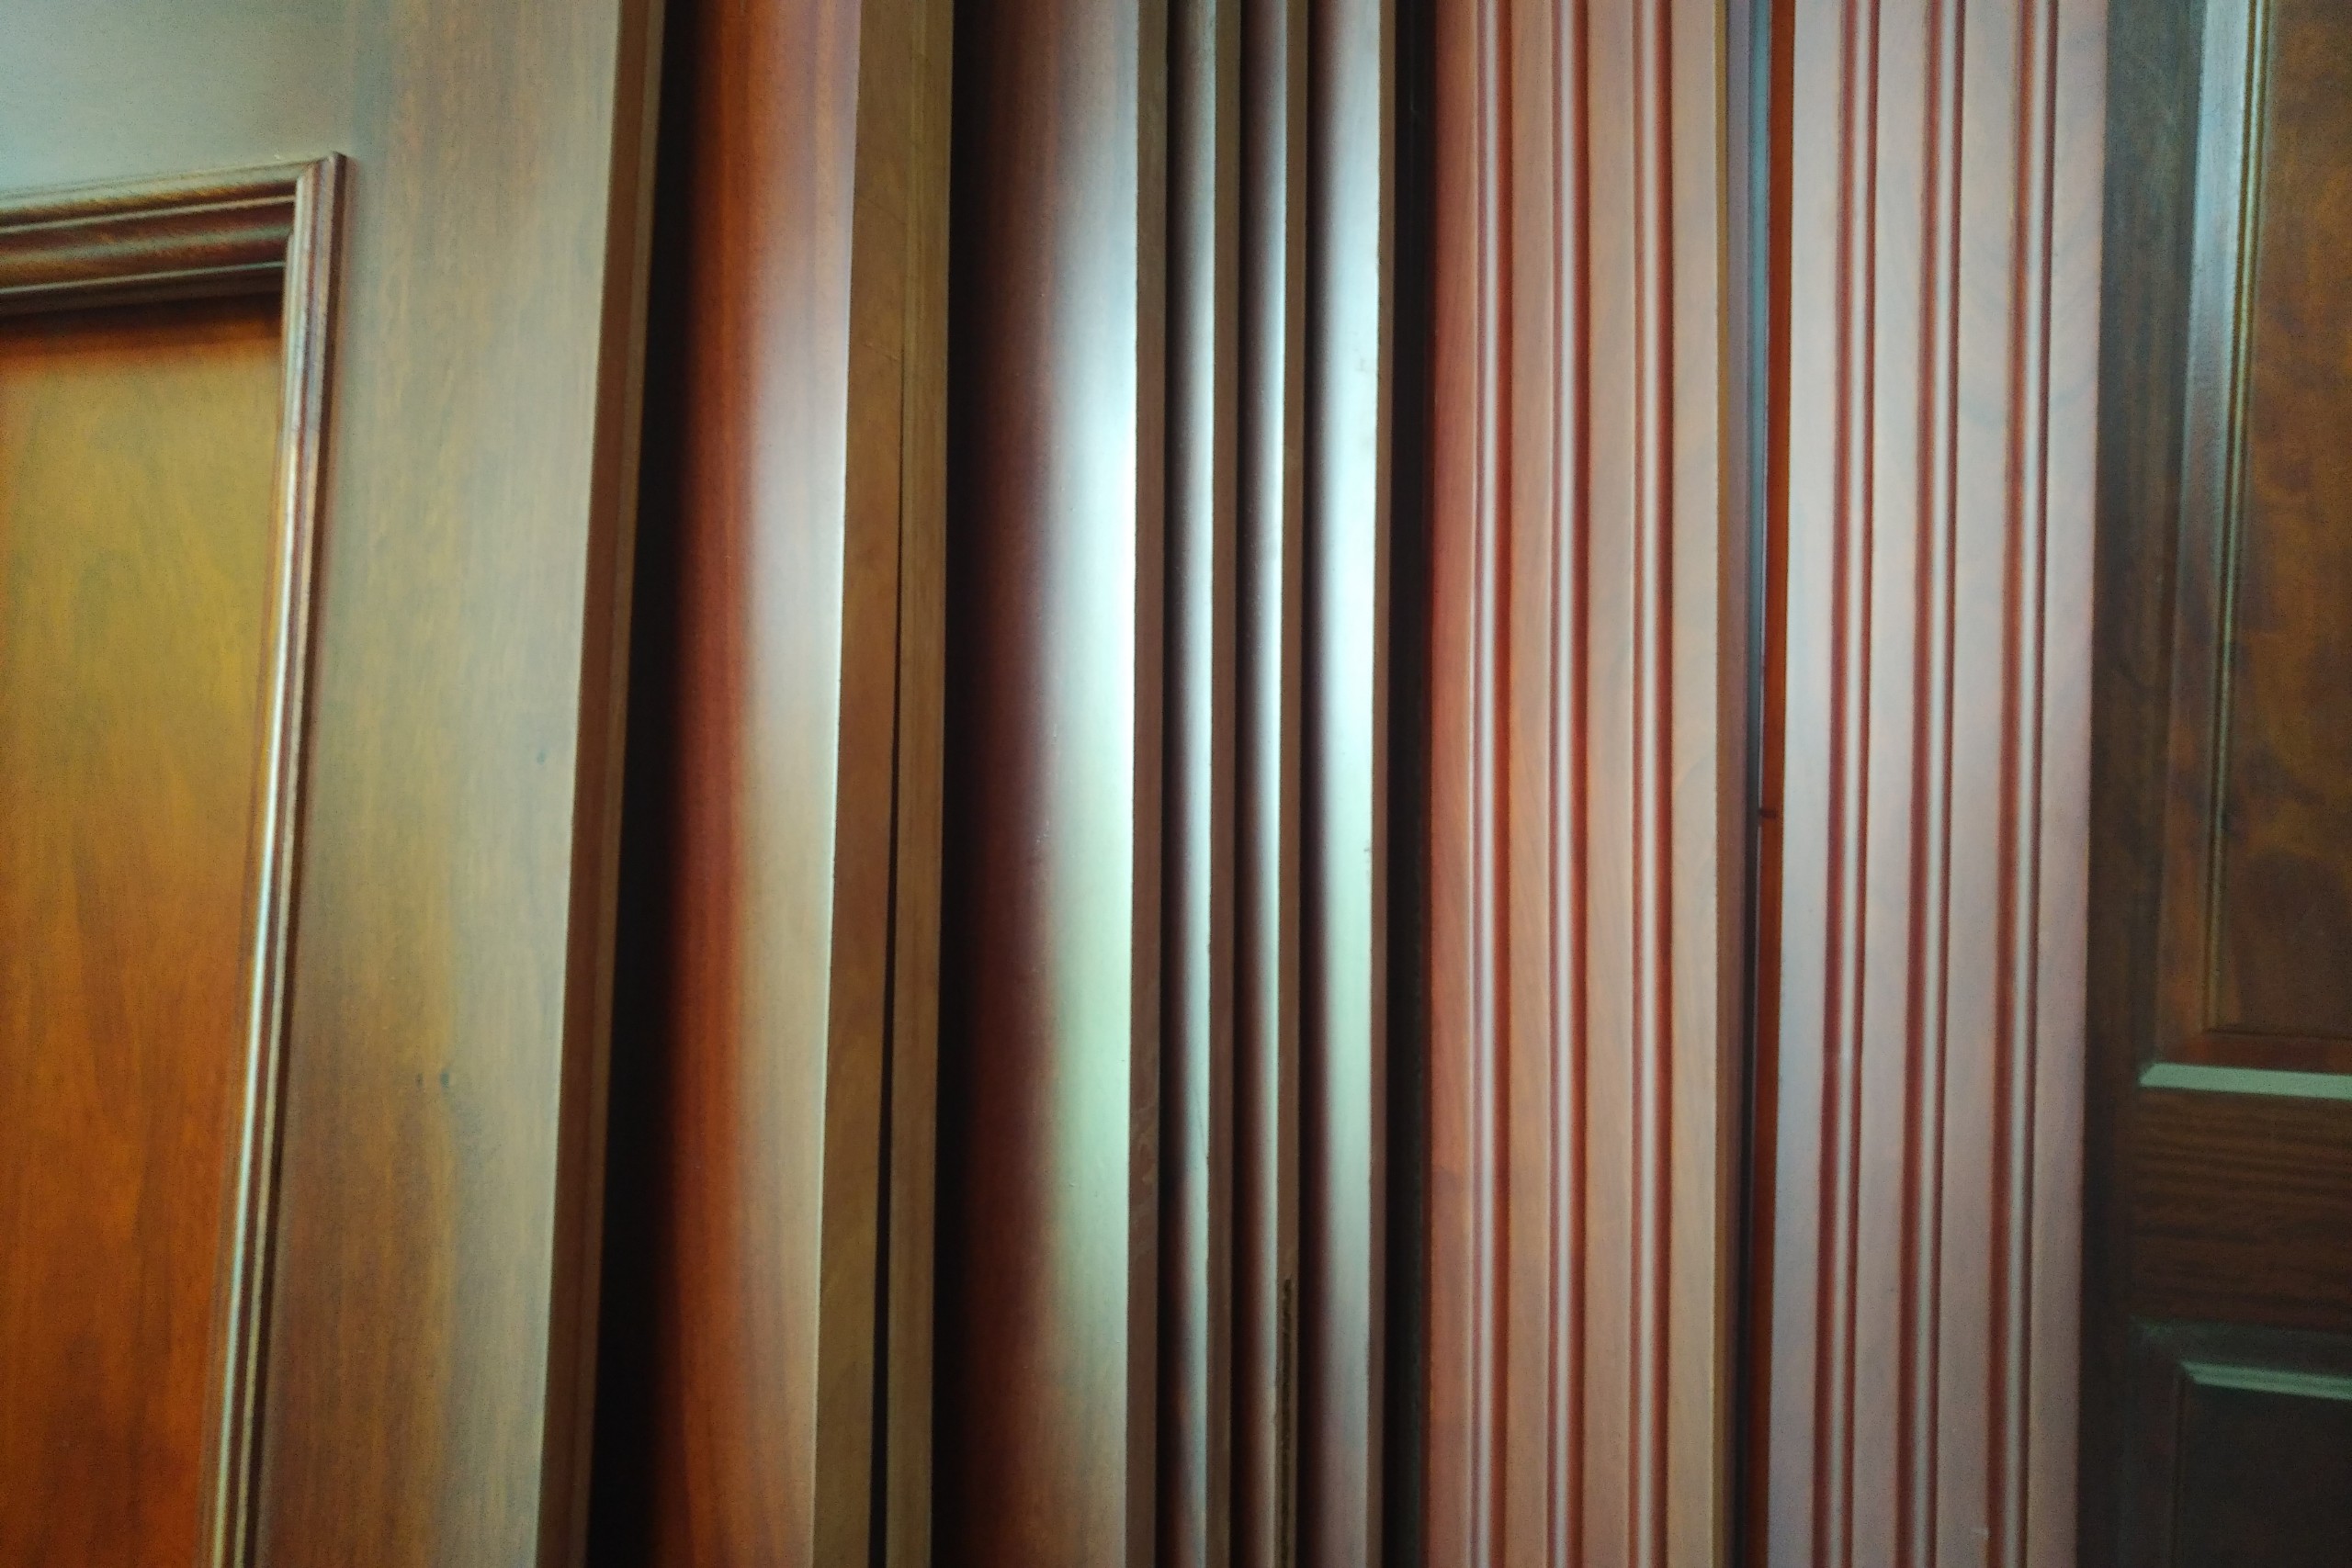 Quy trình sơn gỗ U9 là công nghệ sơn gỗ tiên tiến và hoàn hảo nhất hiện nay. Để hiểu rõ hơn về quy trình này, bạn hãy cùng xem hình ảnh liên quan và khám phá những bức tranh gỗ tuyệt đẹp được tạo nên từ quy trình sơn gỗ U9.